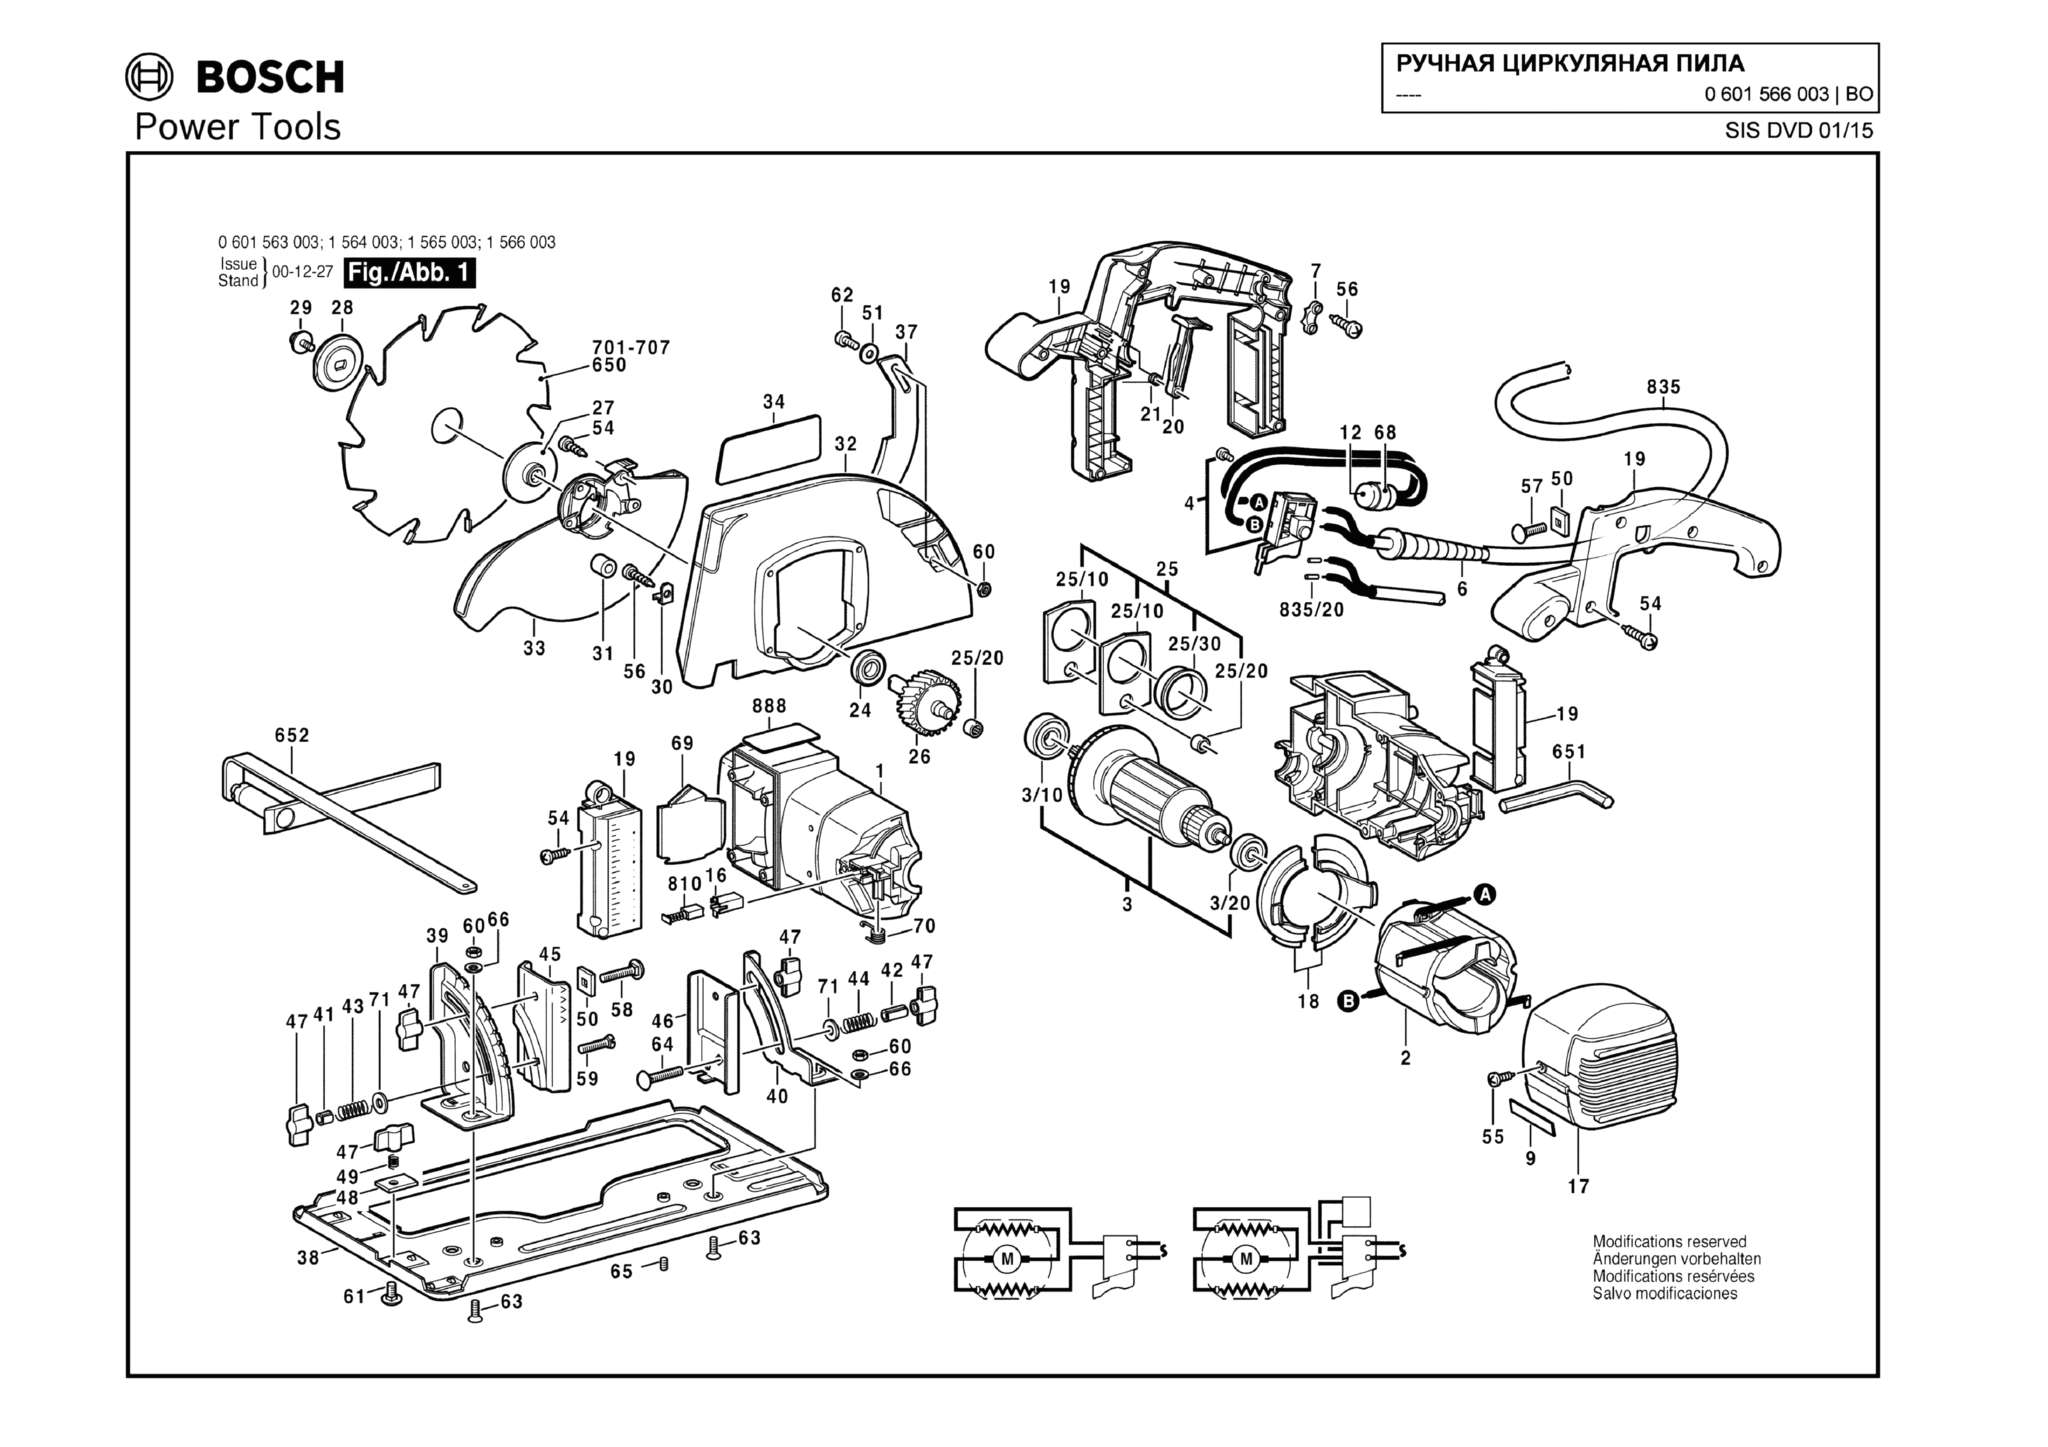 Запчасти, схема и деталировка Bosch (ТИП 0601566003)